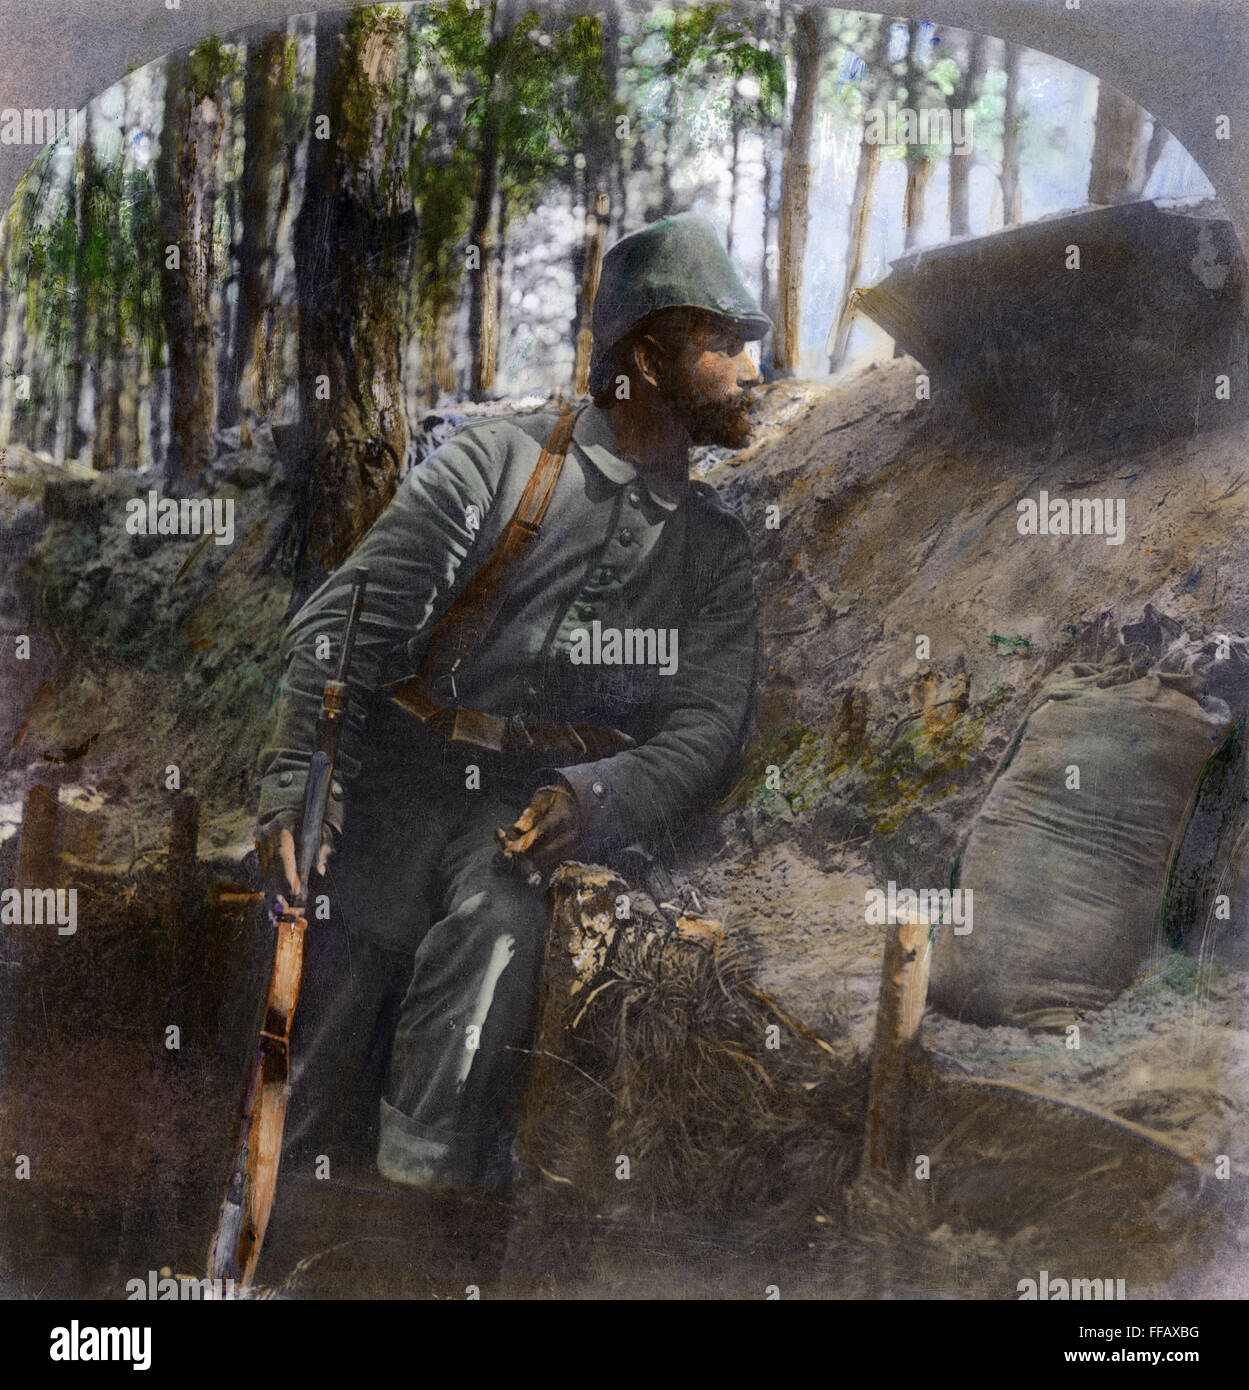 La PREMIÈRE GUERRE MONDIALE : soldat allemand, 1916. /NA soldat allemand sur la montre de son trench sur le front russe, 1916. Huile à une photographie. Banque D'Images